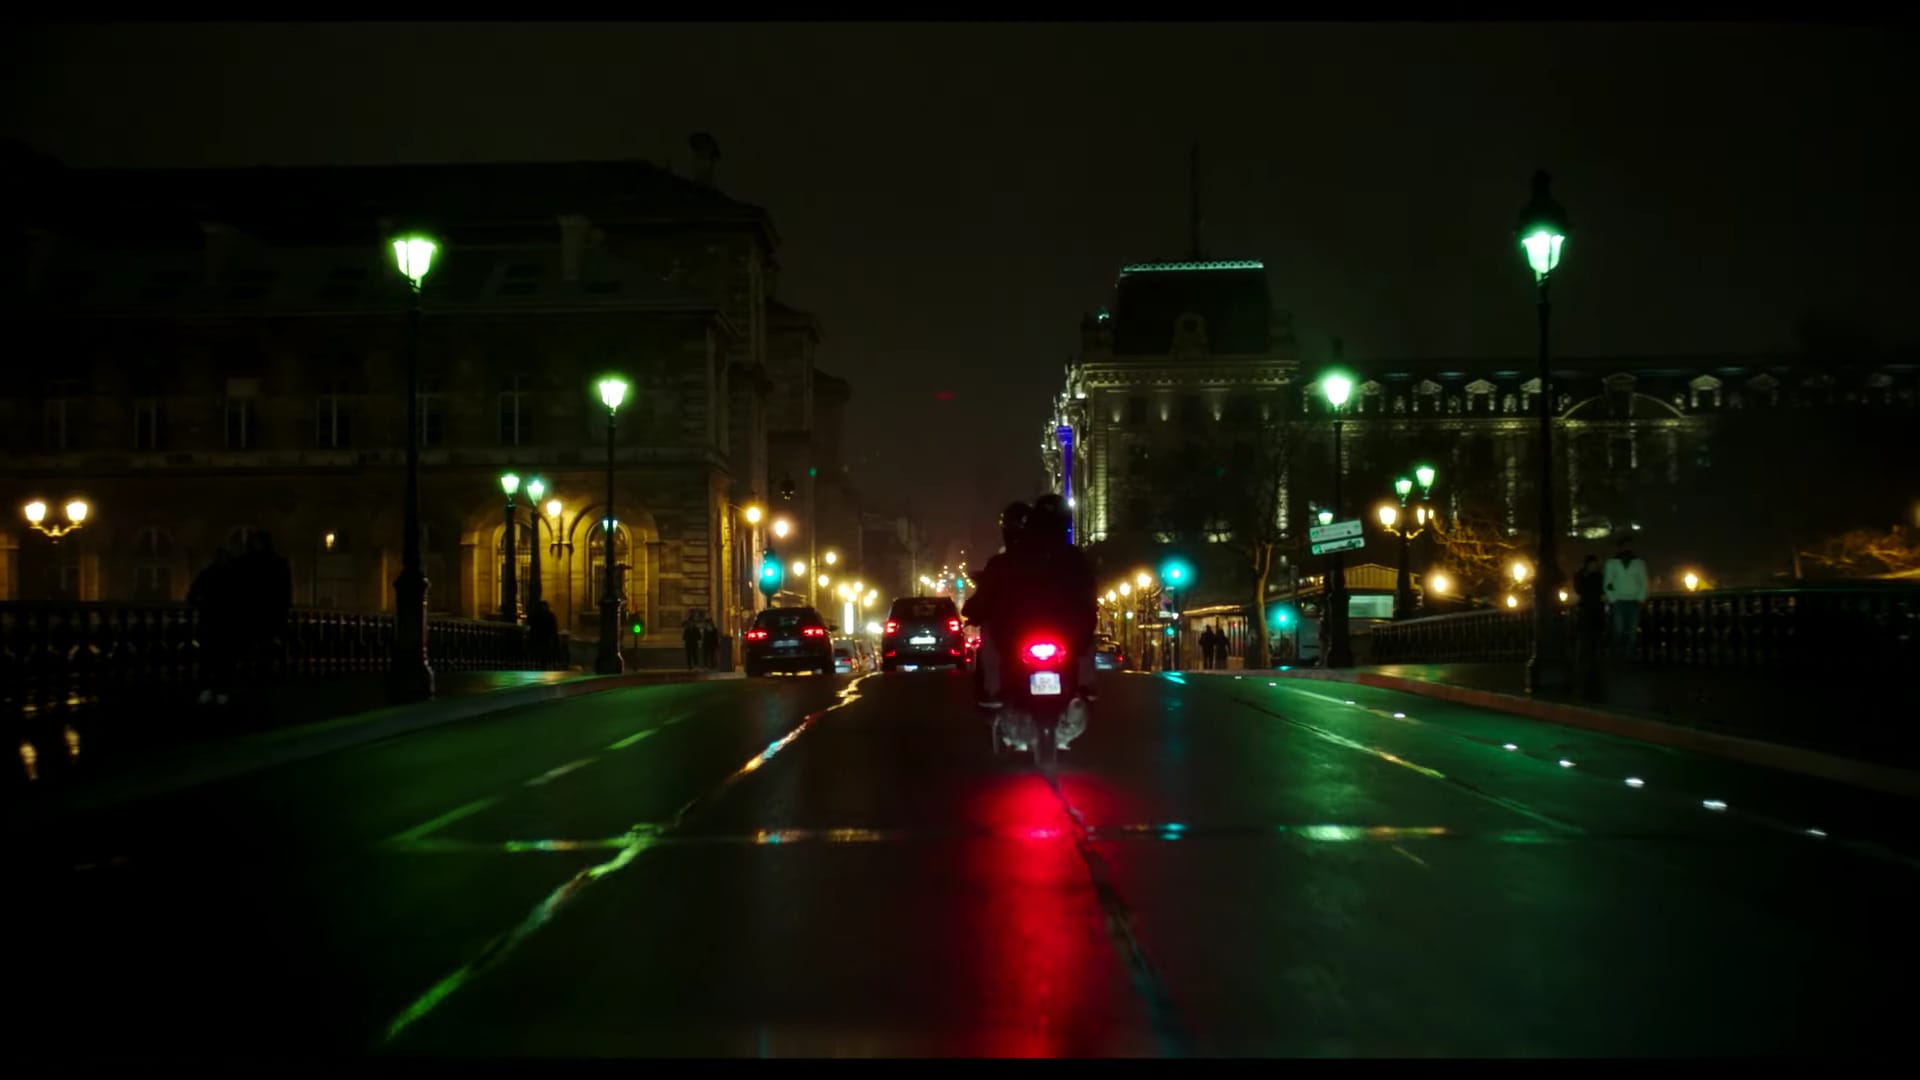 Vue de nuit sur une rue parisienne, un scooter et des véhicules freinent